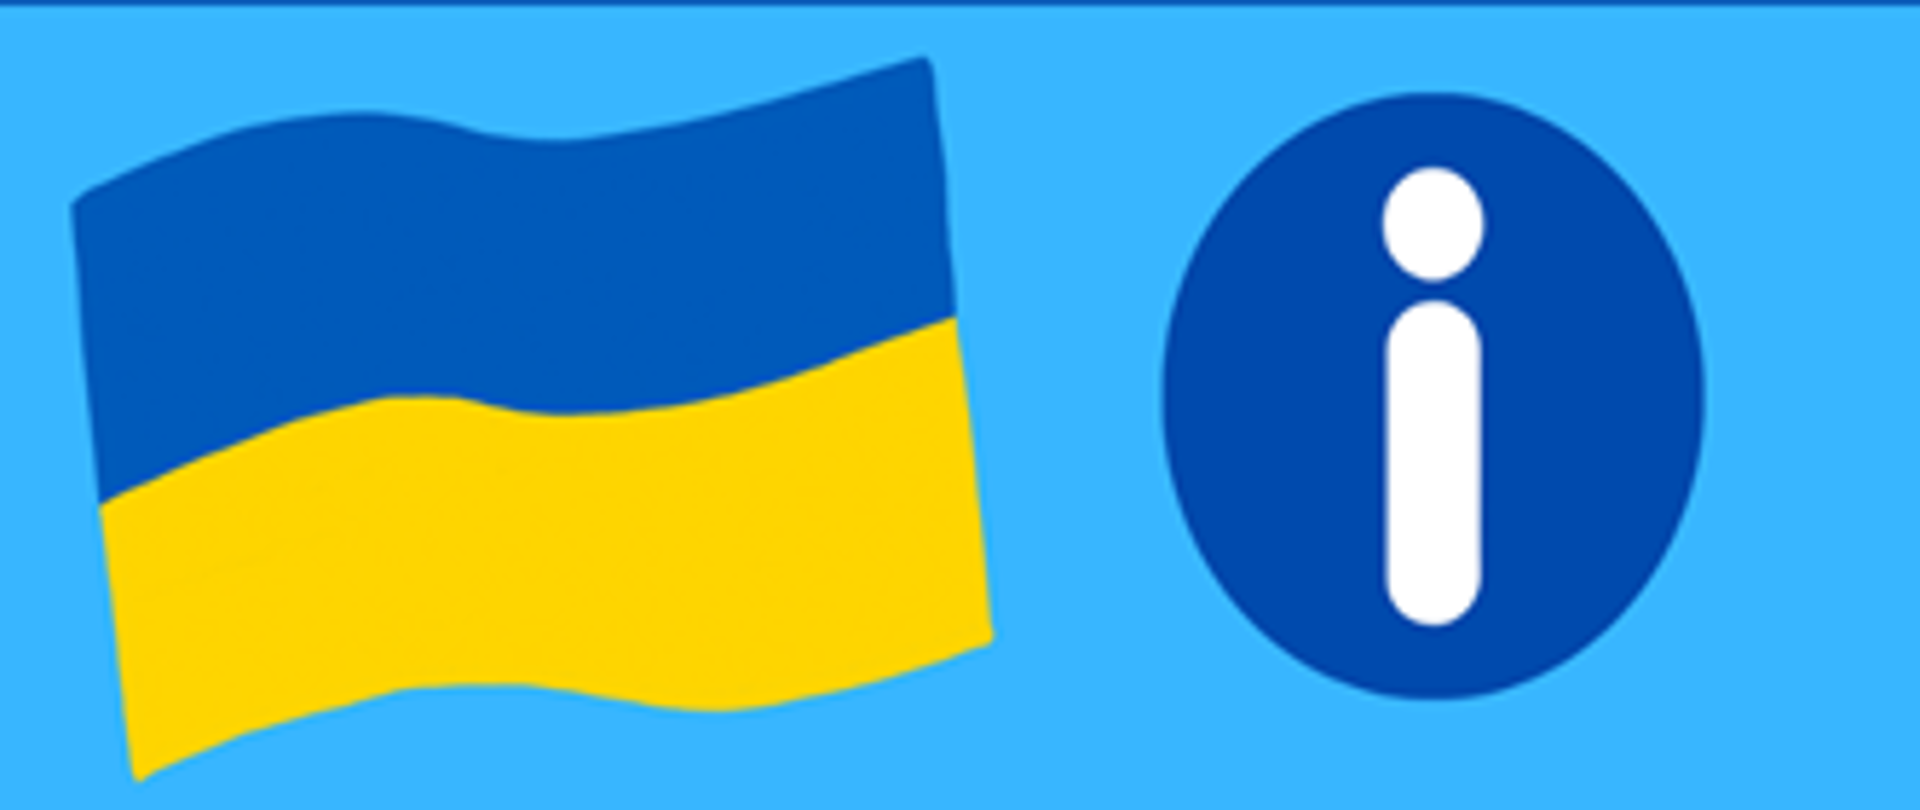 Flaga Ukraińska oraz znak informacja w fomie koła w środku z literą i małe.